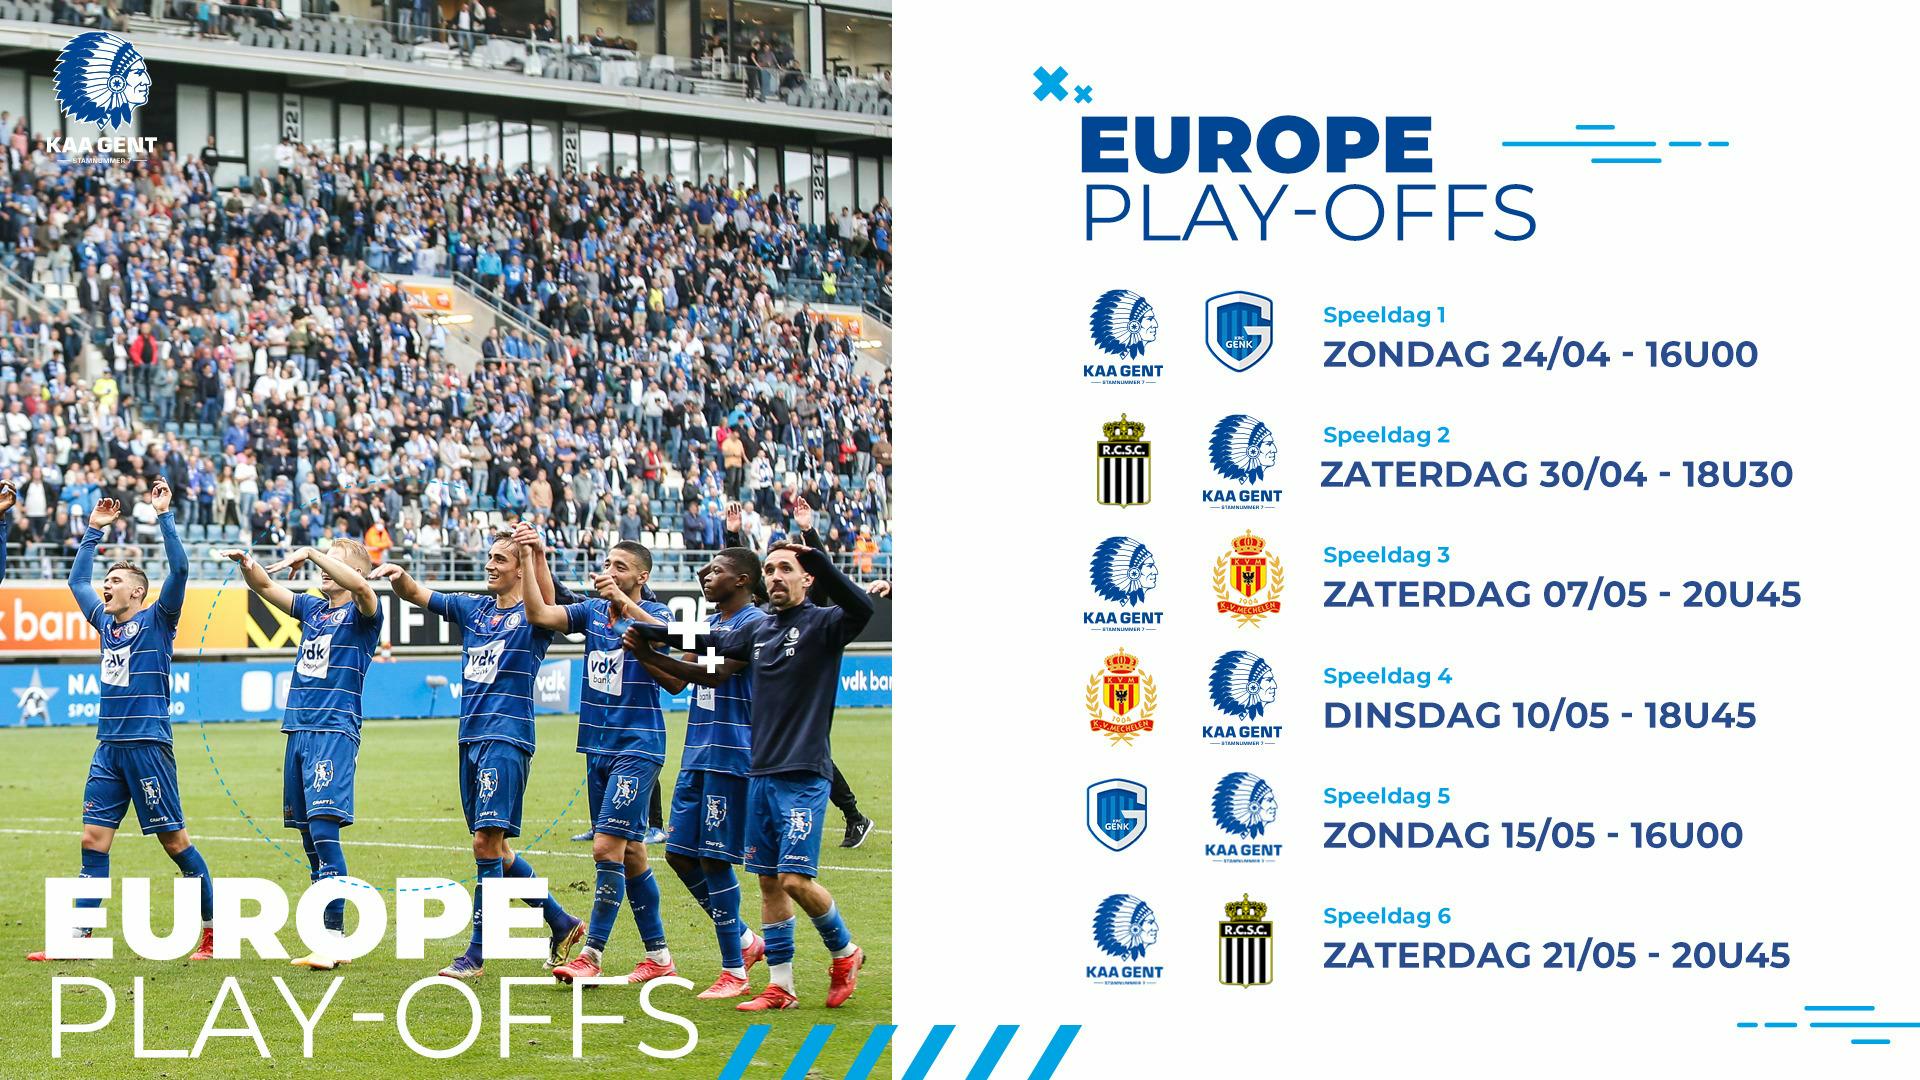 Europe play-offs: kalender & abonnementen